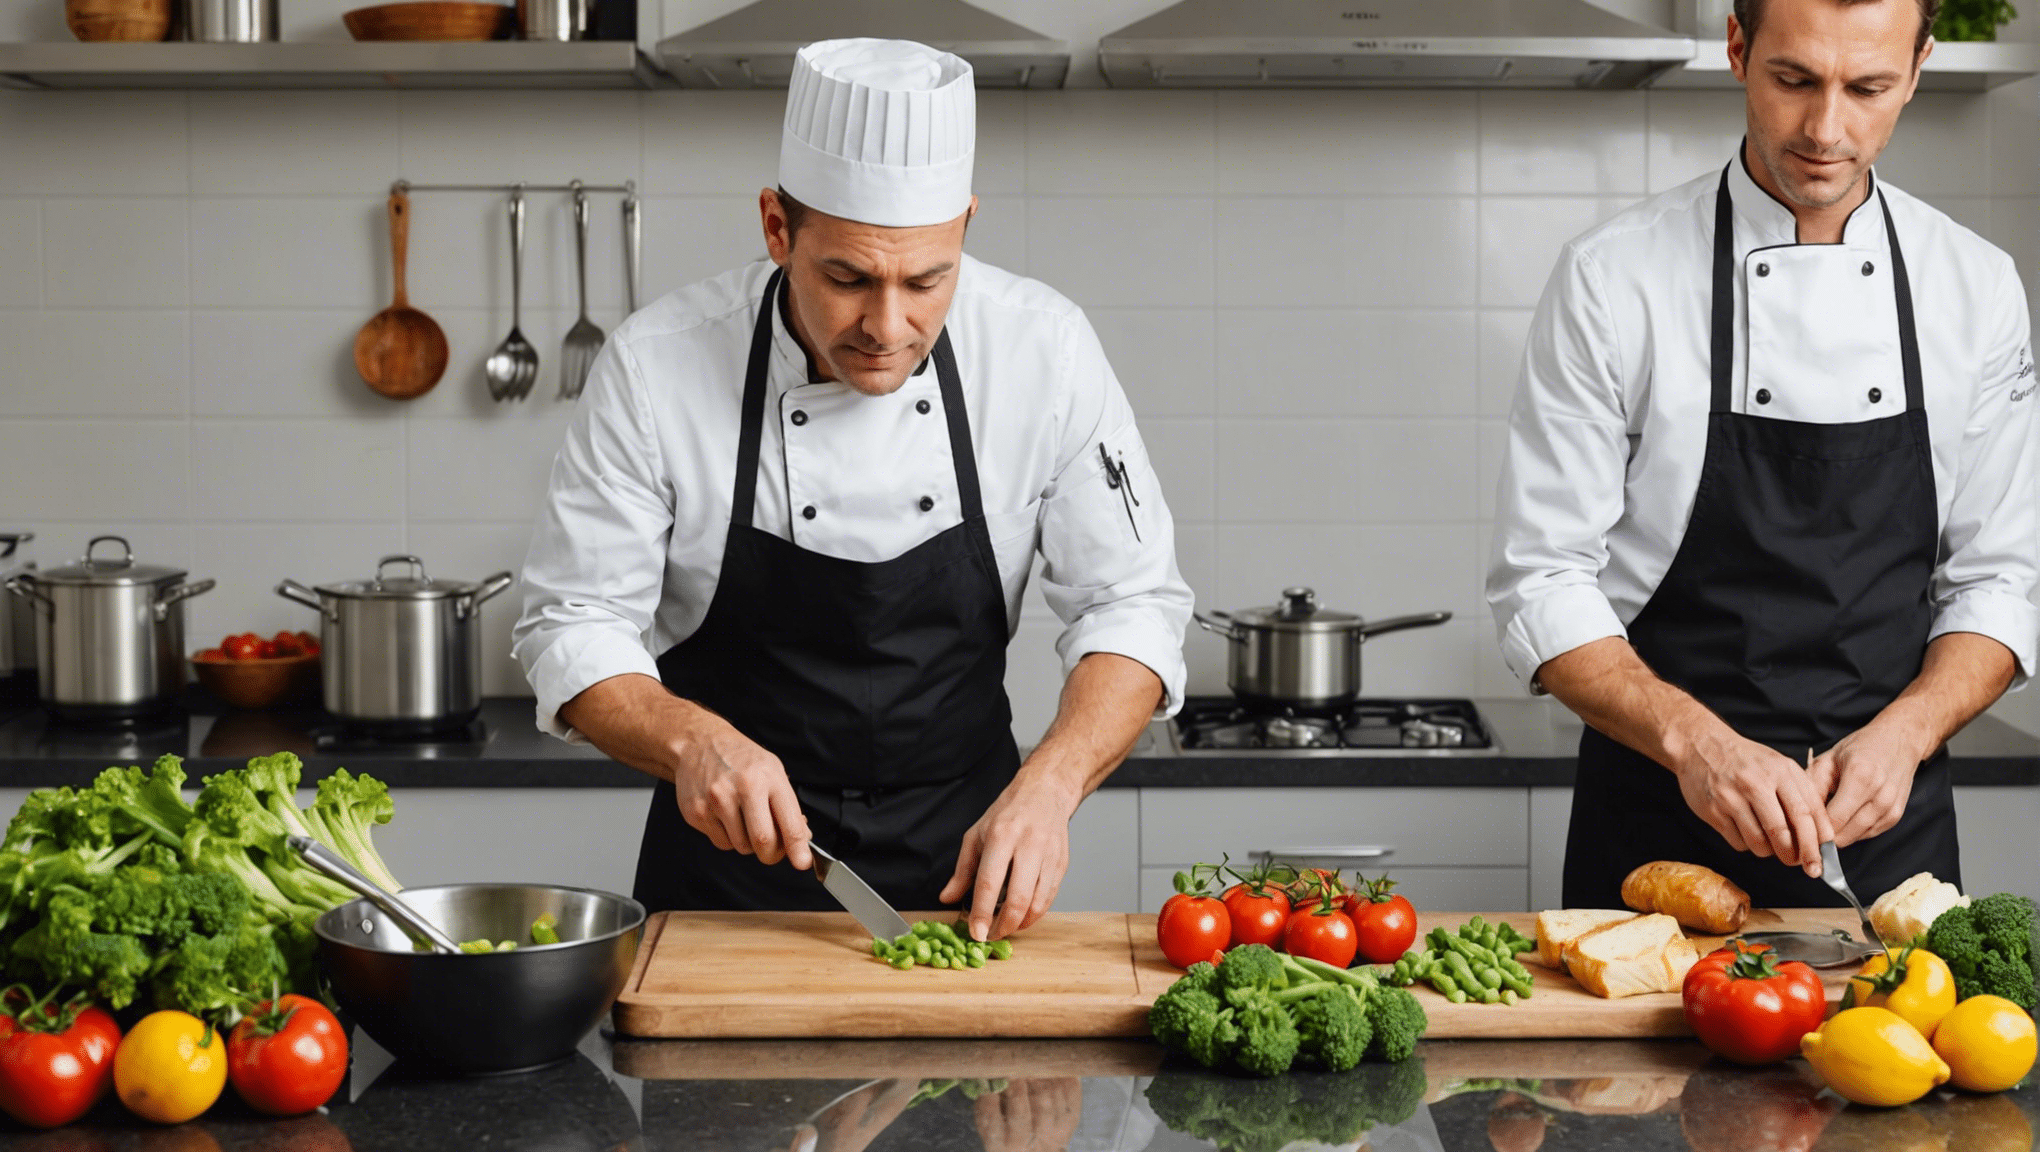 découvrez comment les chefs conservent jalousement leurs secrets pour cuisiner à la maison et apprenez à les utiliser pour améliorer vos compétences culinaires.